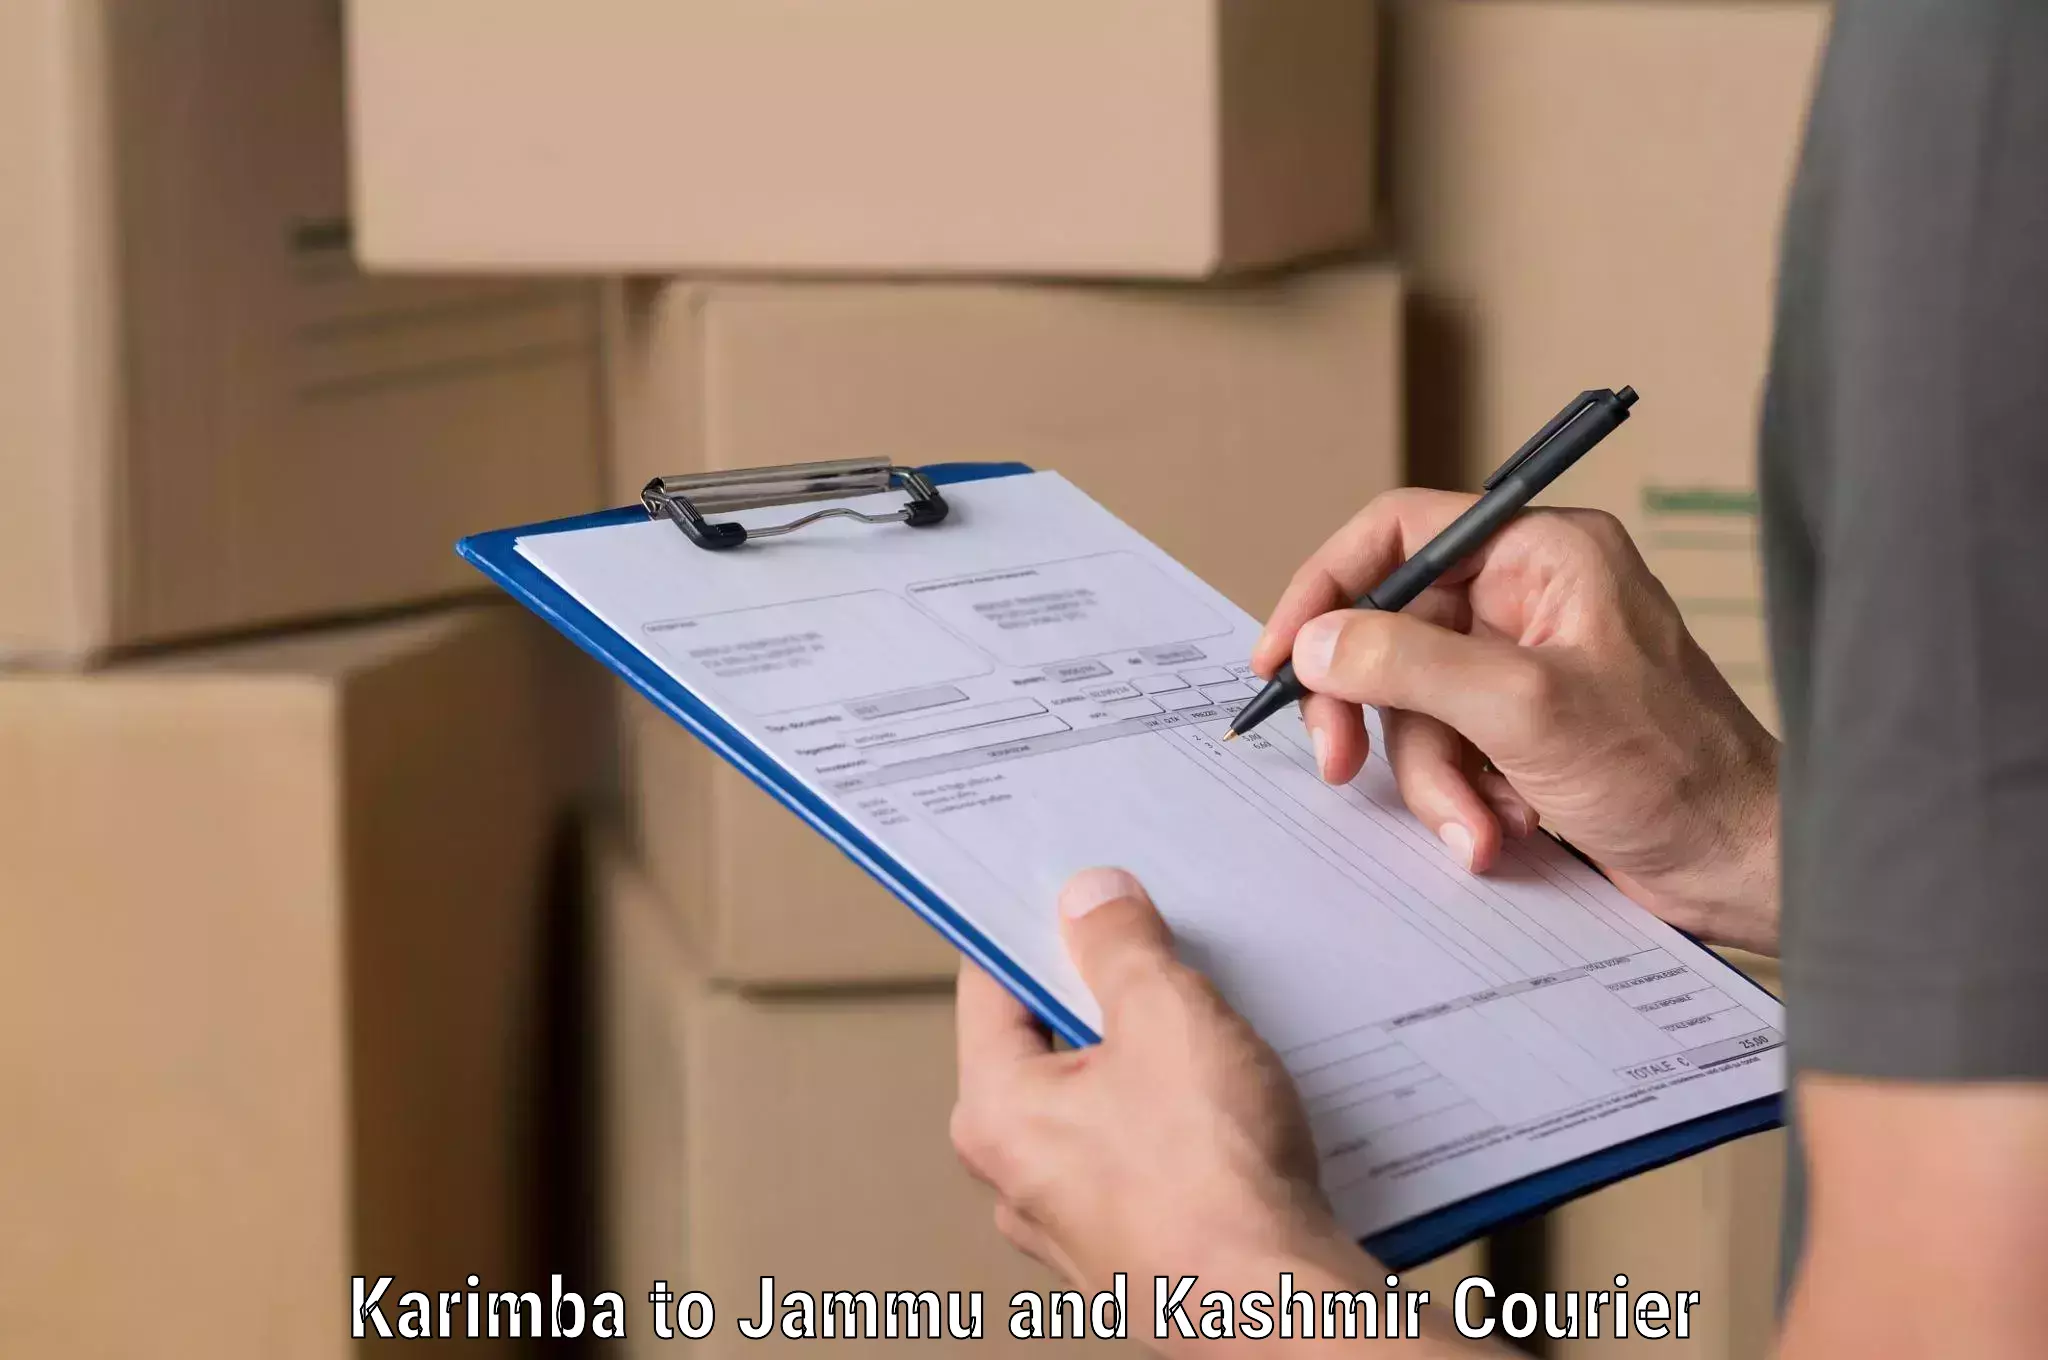 Urgent courier needs Karimba to Kulgam